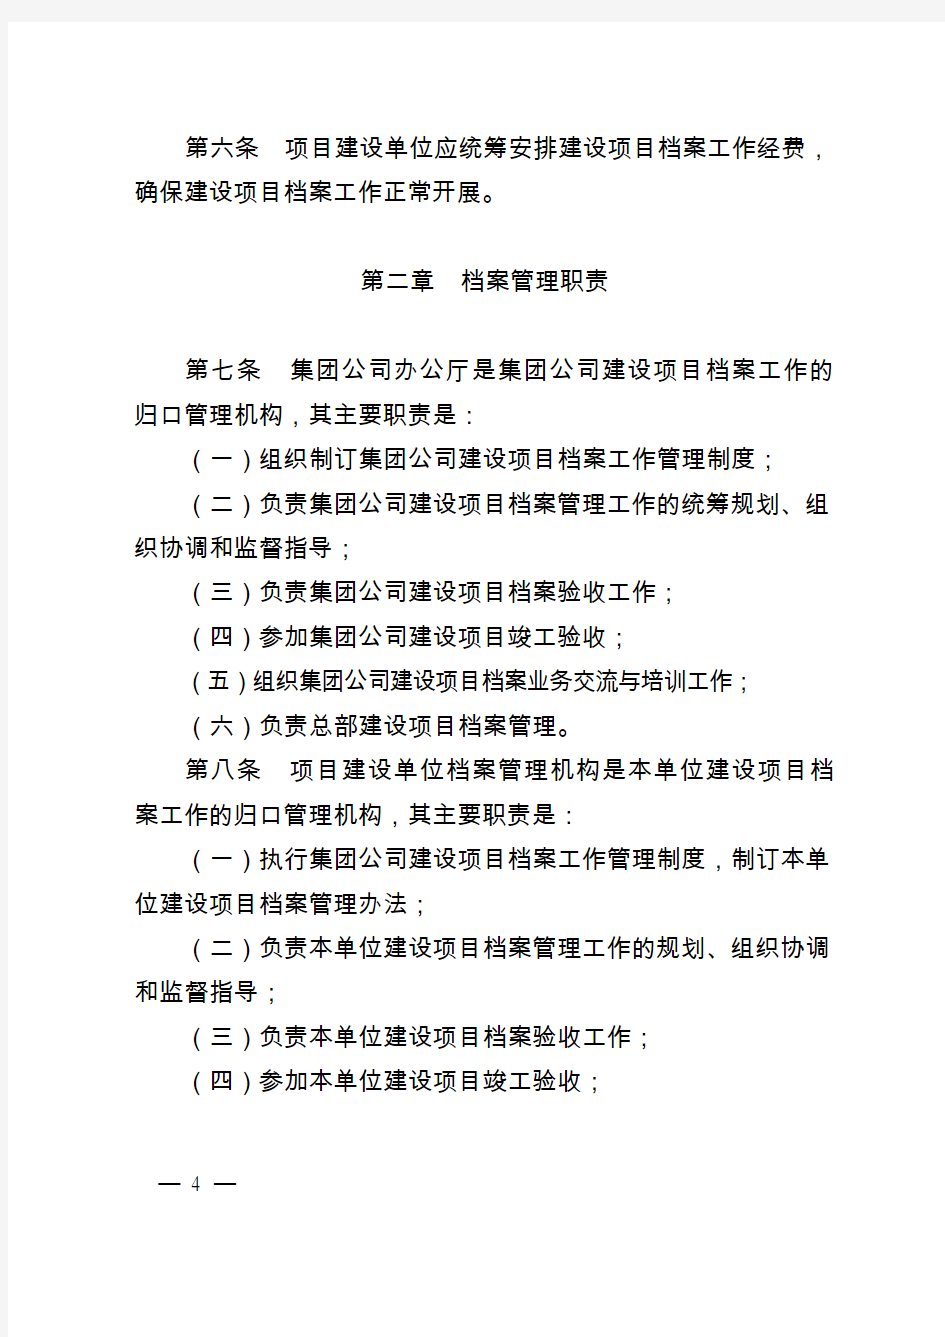 (完整版)中国石油天然气集团公司建设项目档案管理规定